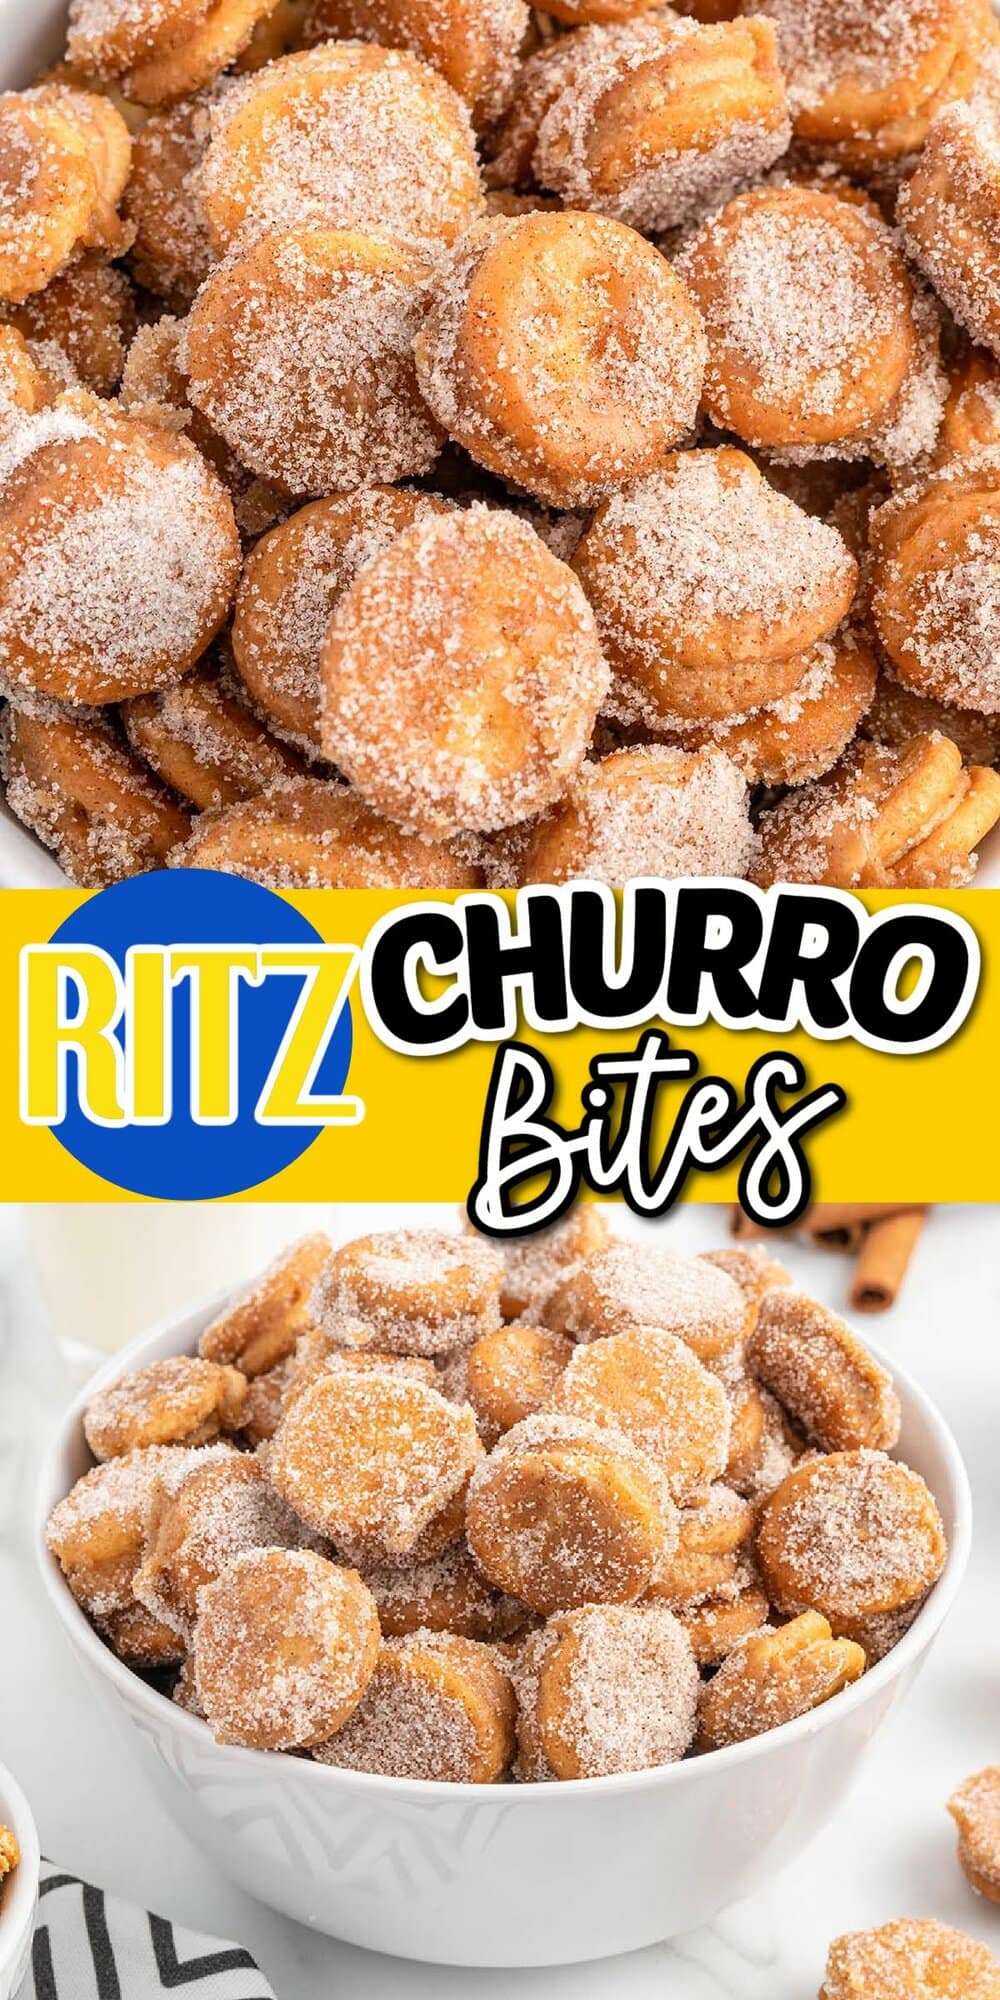 Ritz Churro Bites pinterest